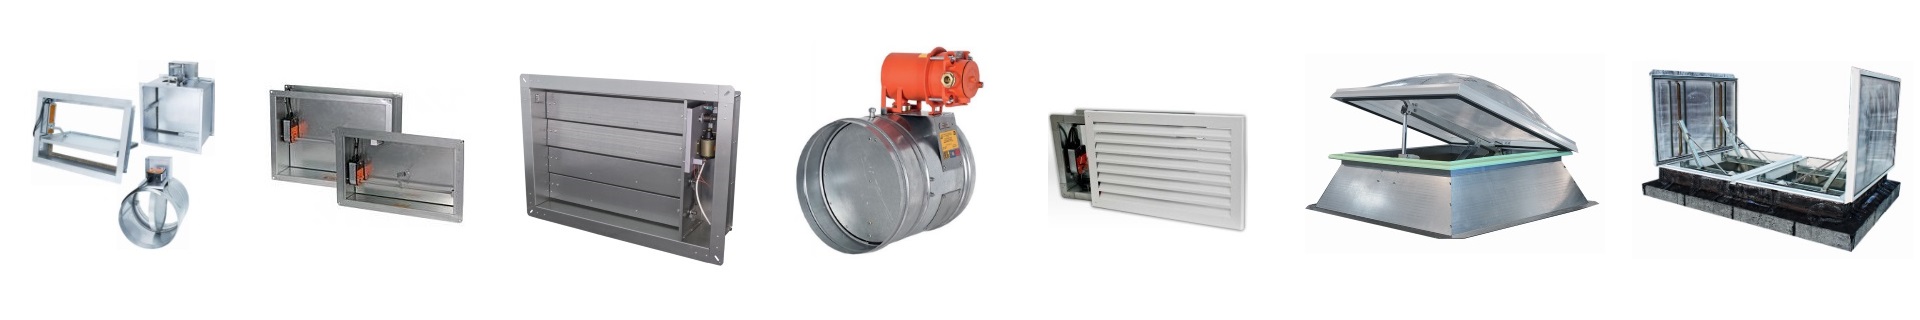 Противопожарные клапаны КВП цена от 7500 руб купить огнезадерживающий клапан КВП